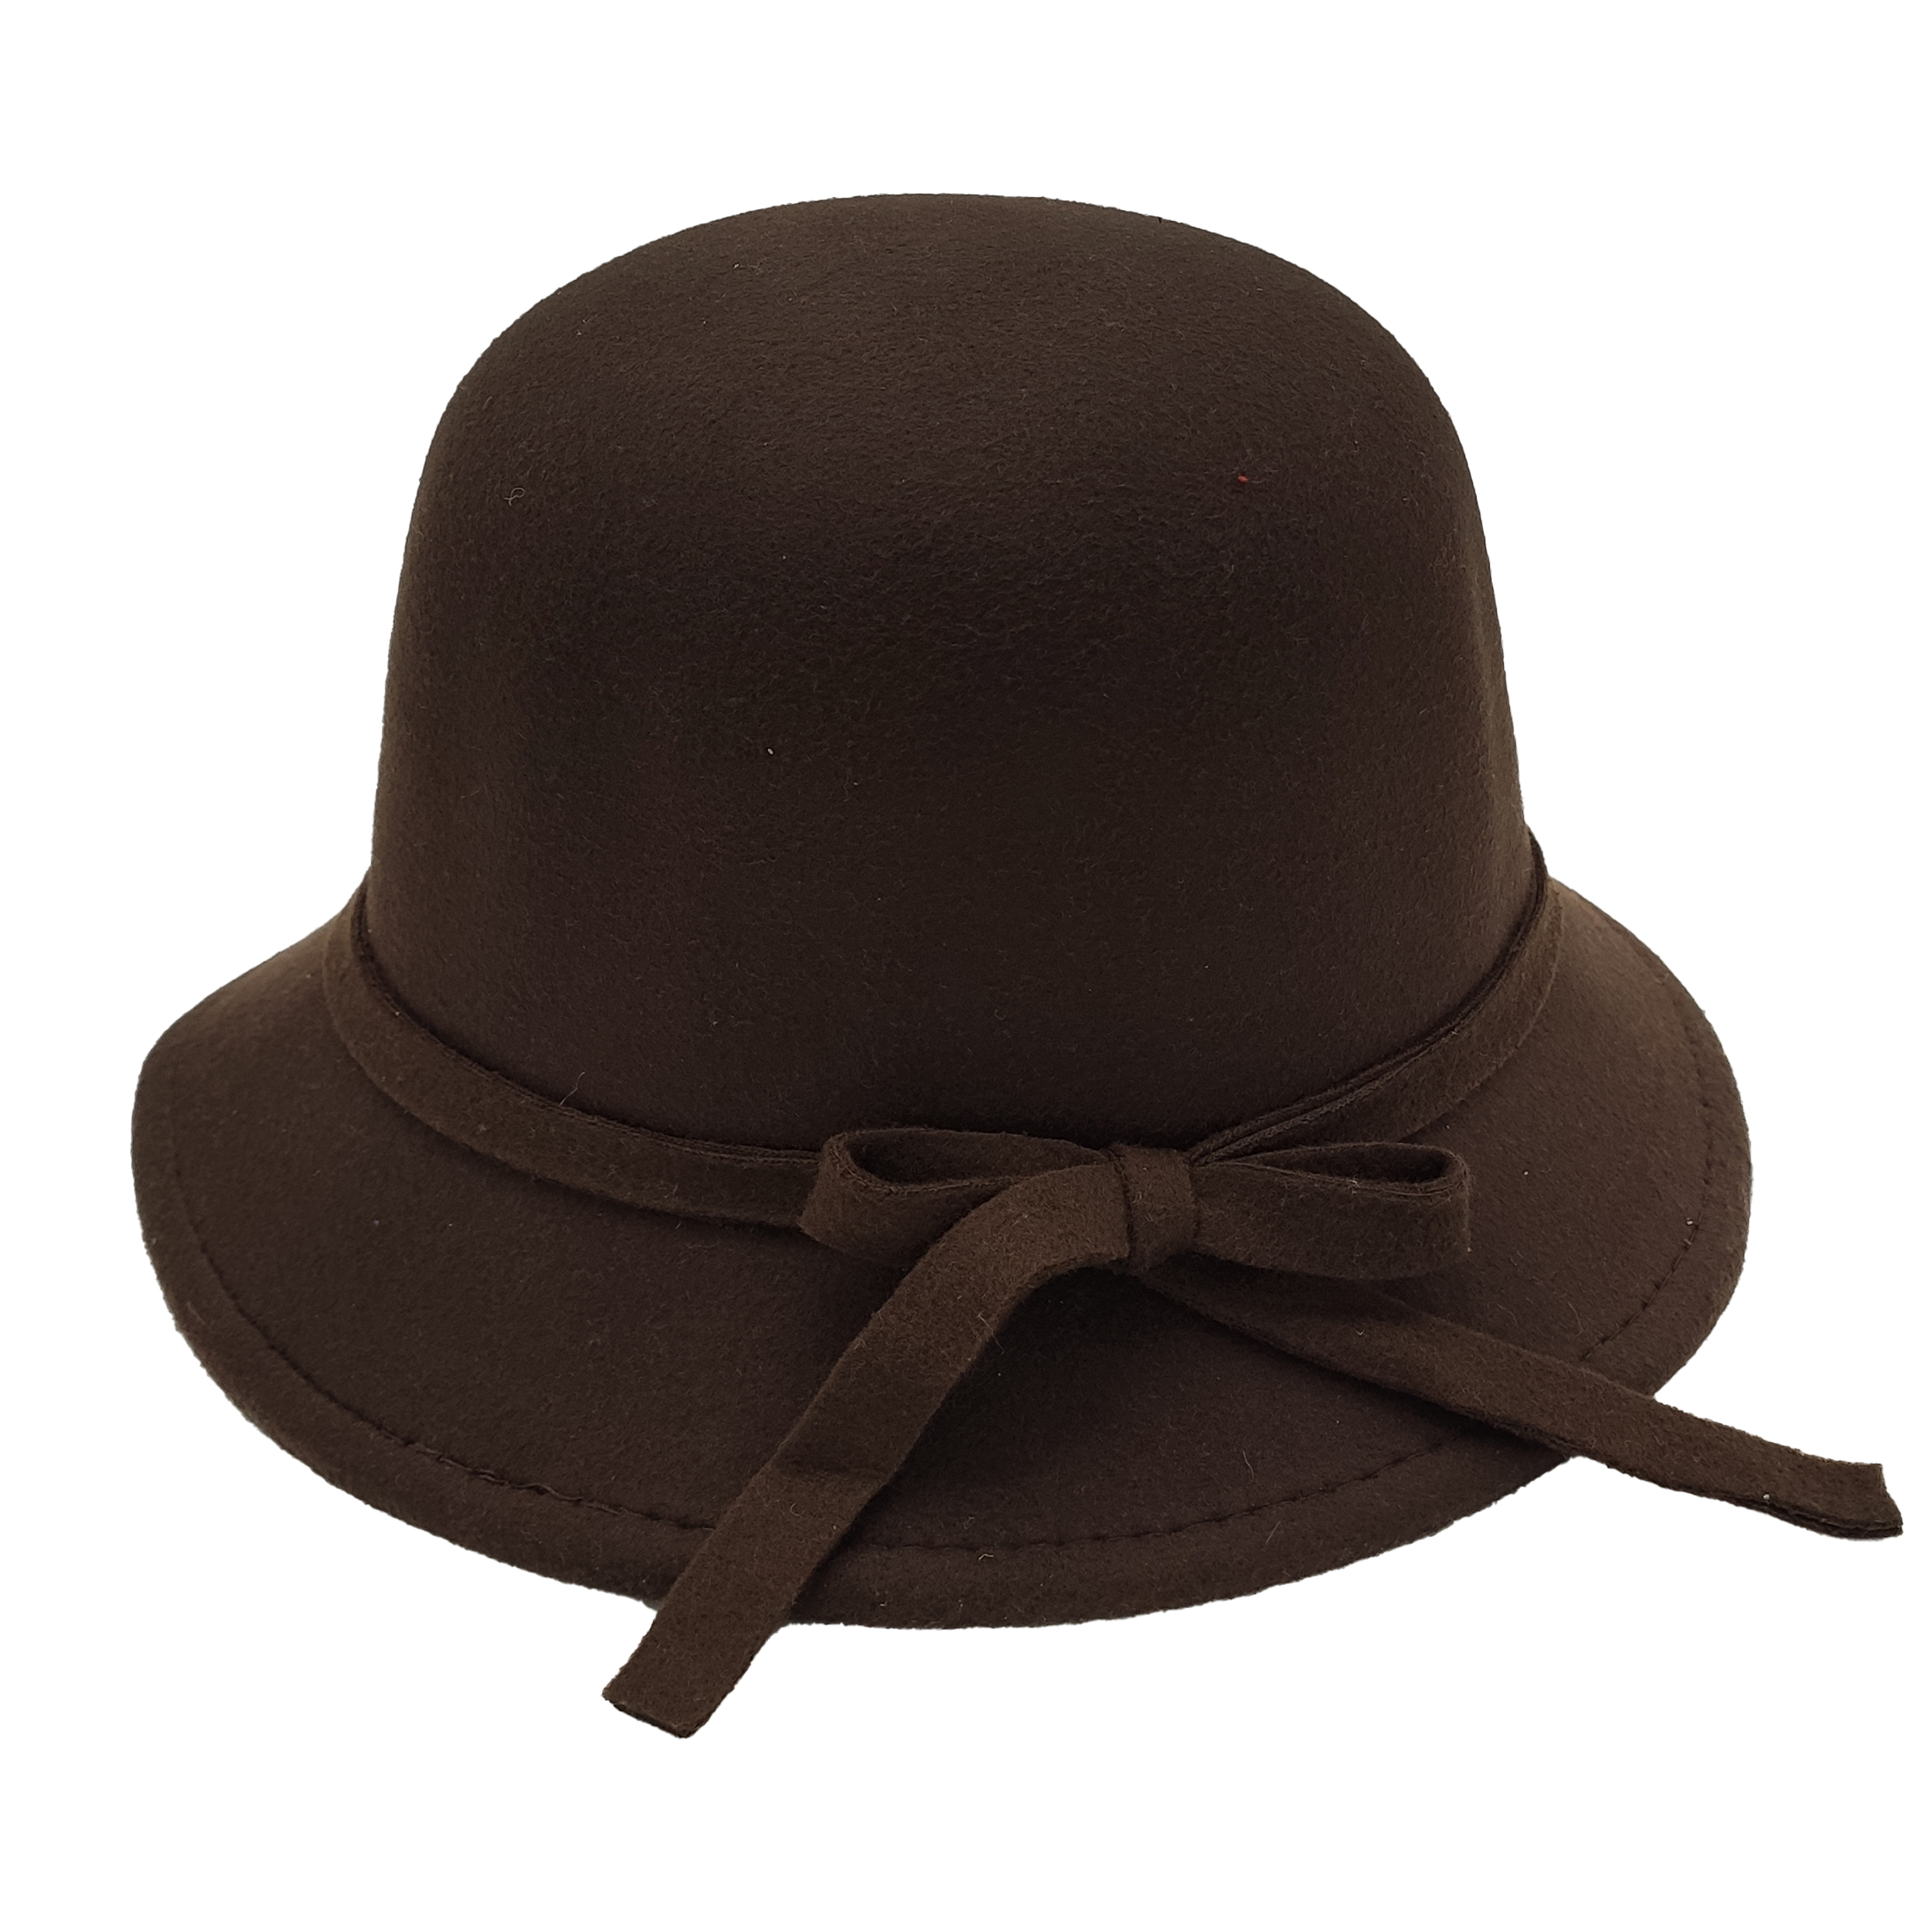  کلاه شاپو مدل شهرزاد کد BAN-51251 رنگ قهوه ایی تیره